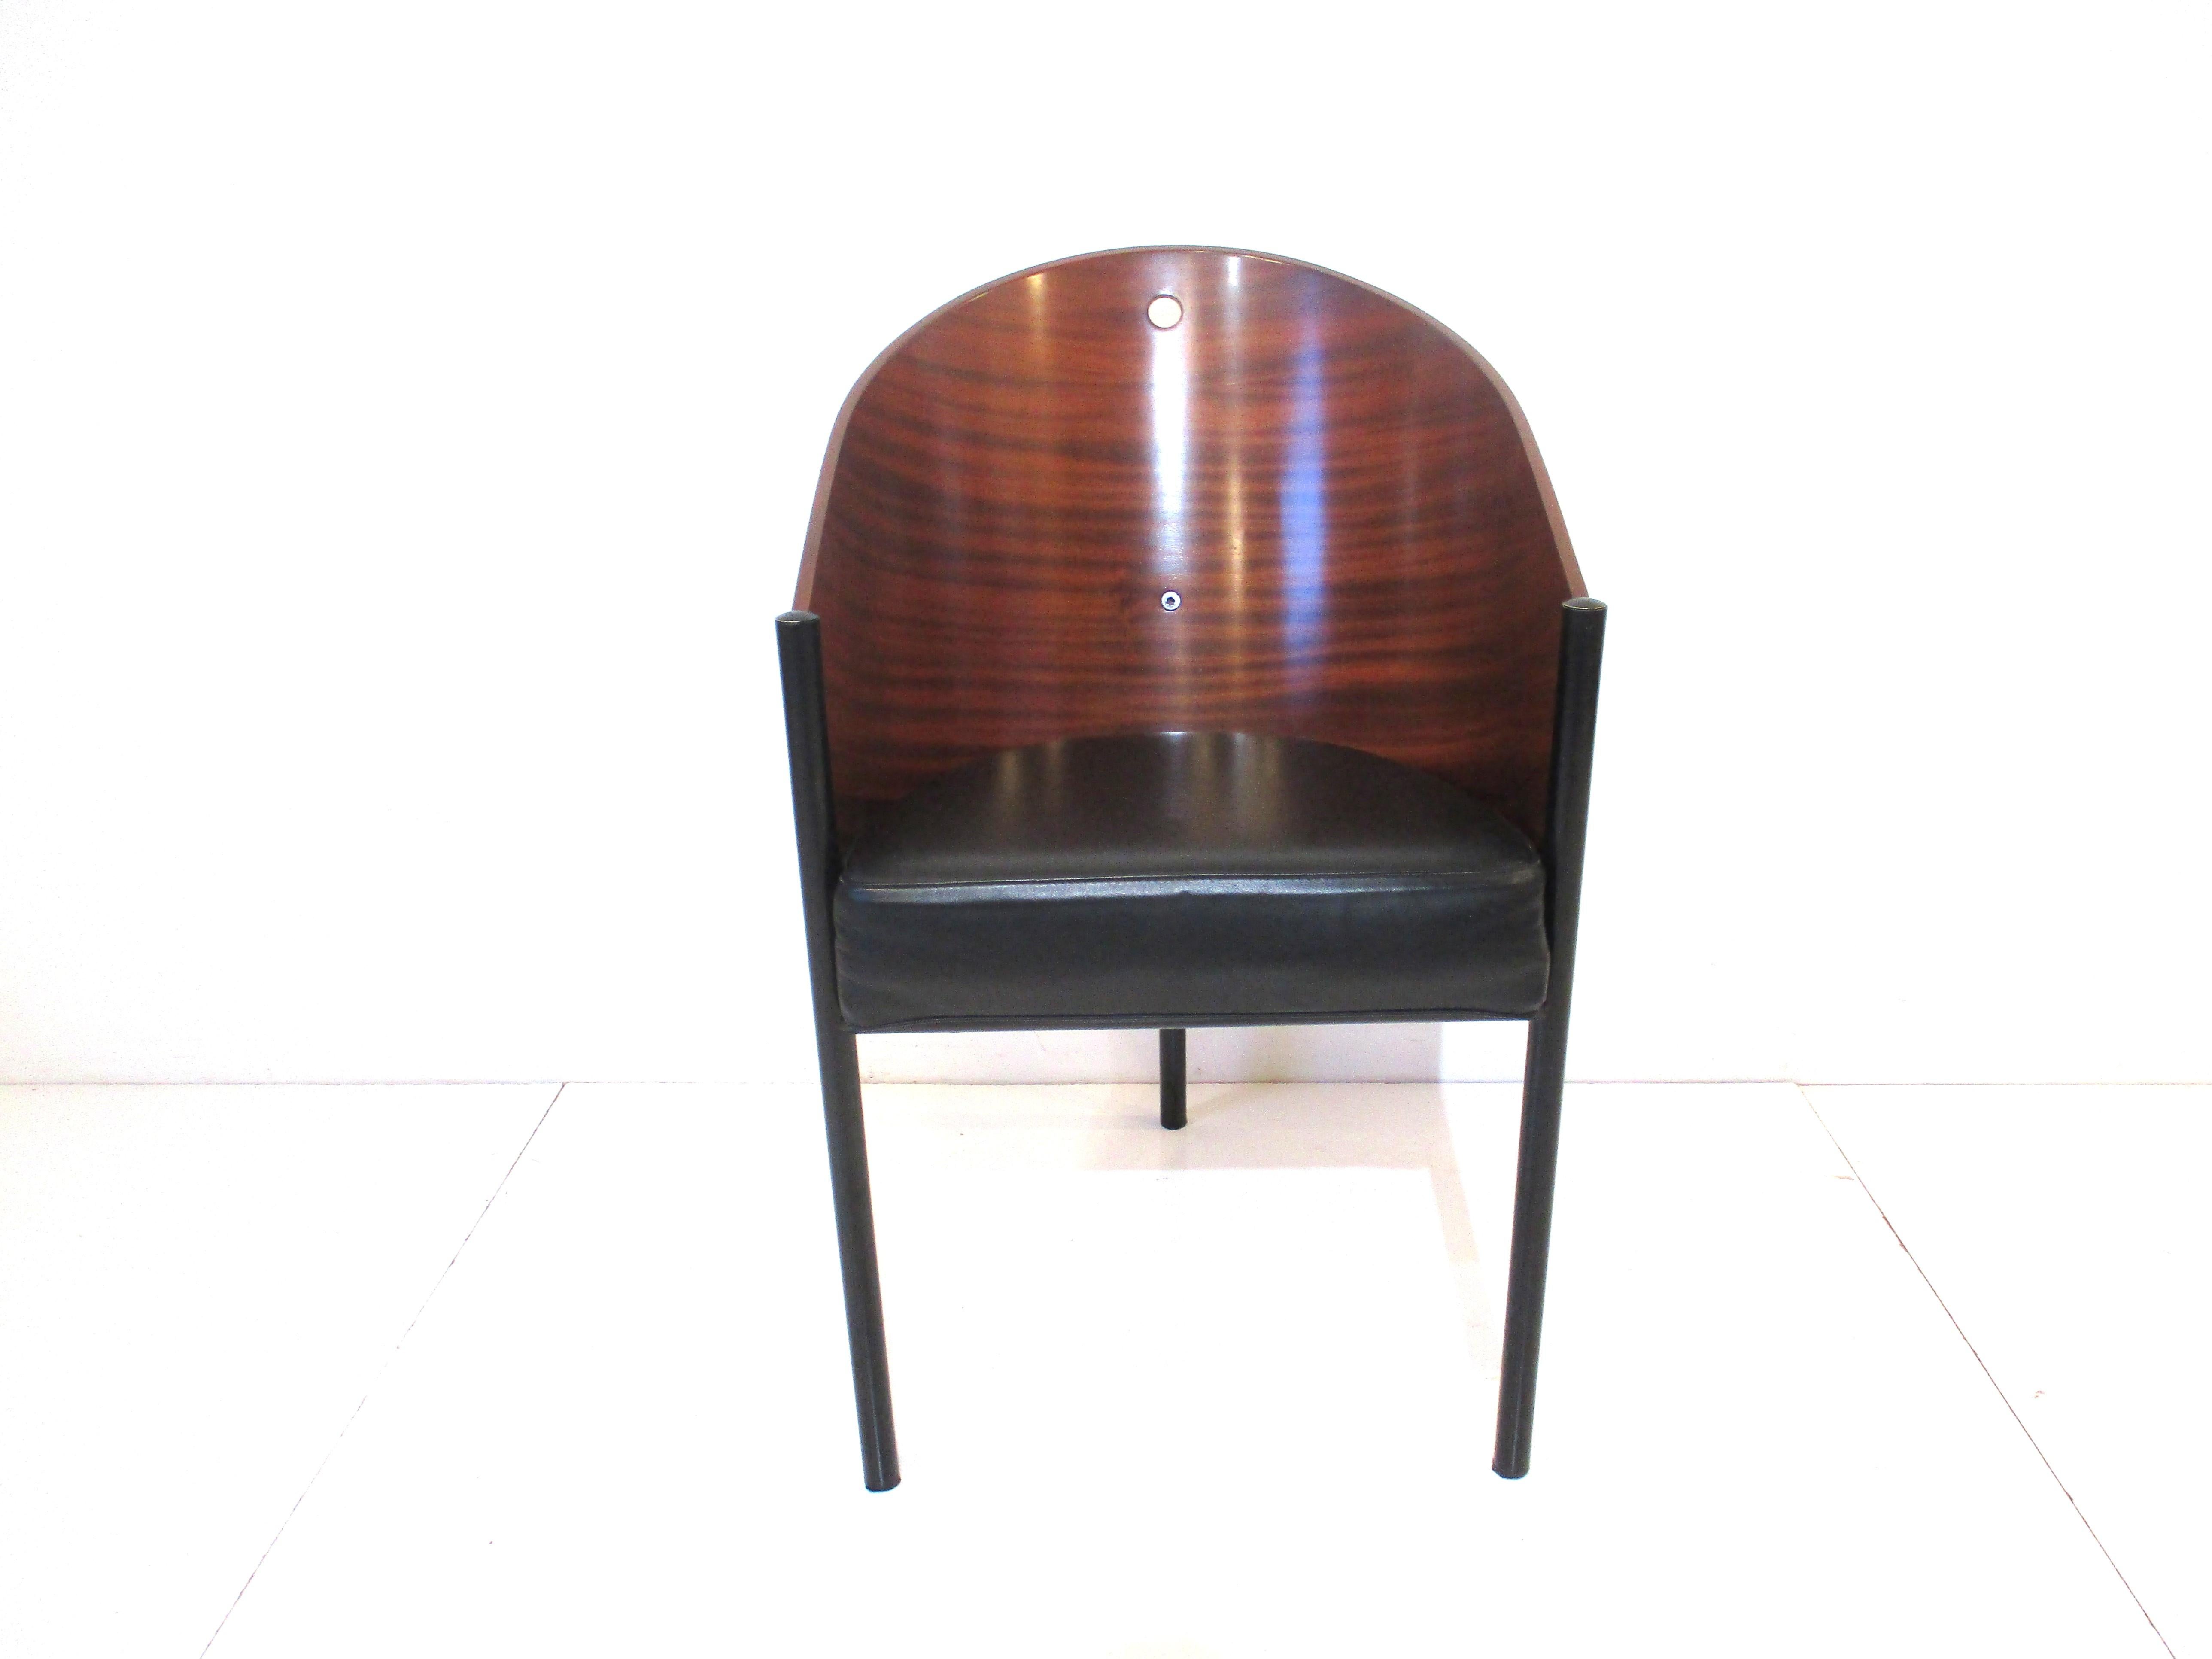 Une chaise Costes très bien conçue par le designer français Philippe Starck avec un dossier en bois arrondi et un trou sur le bord supérieur pour mettre la chaise en position. Les trois pieds noirs satinés et le coussin en cuir font de cette chaise